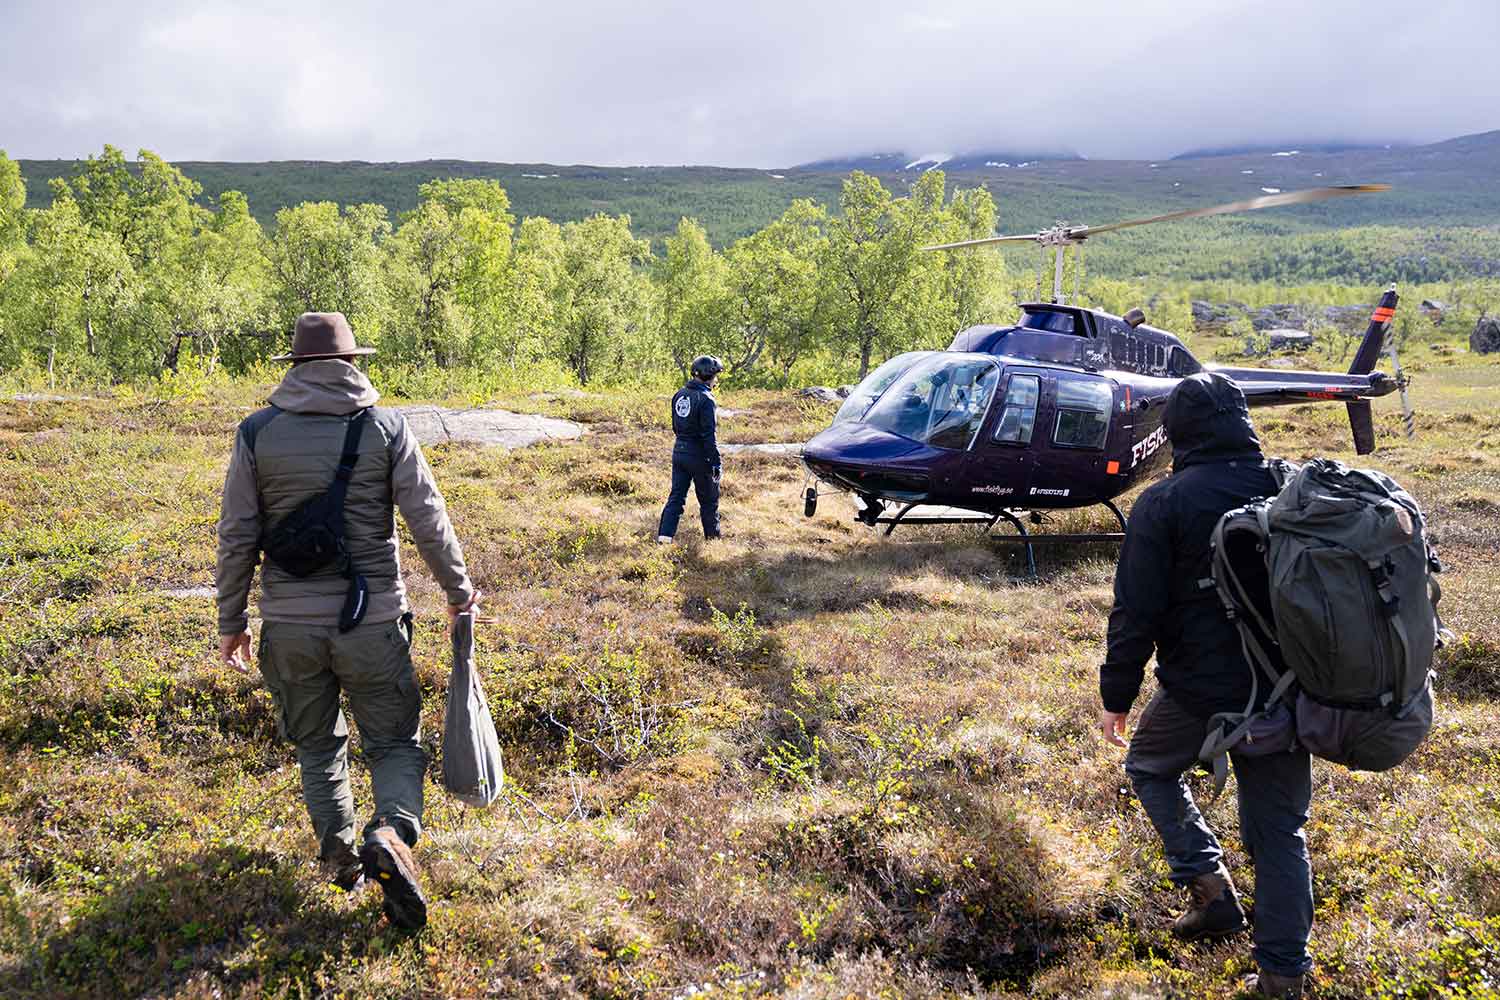 Teilnehmer unseres extrem Survival-Trainings laufen auf einen Hubschrauber in Schweden zu. Im Hintergrund sind Berge zu erkennen.